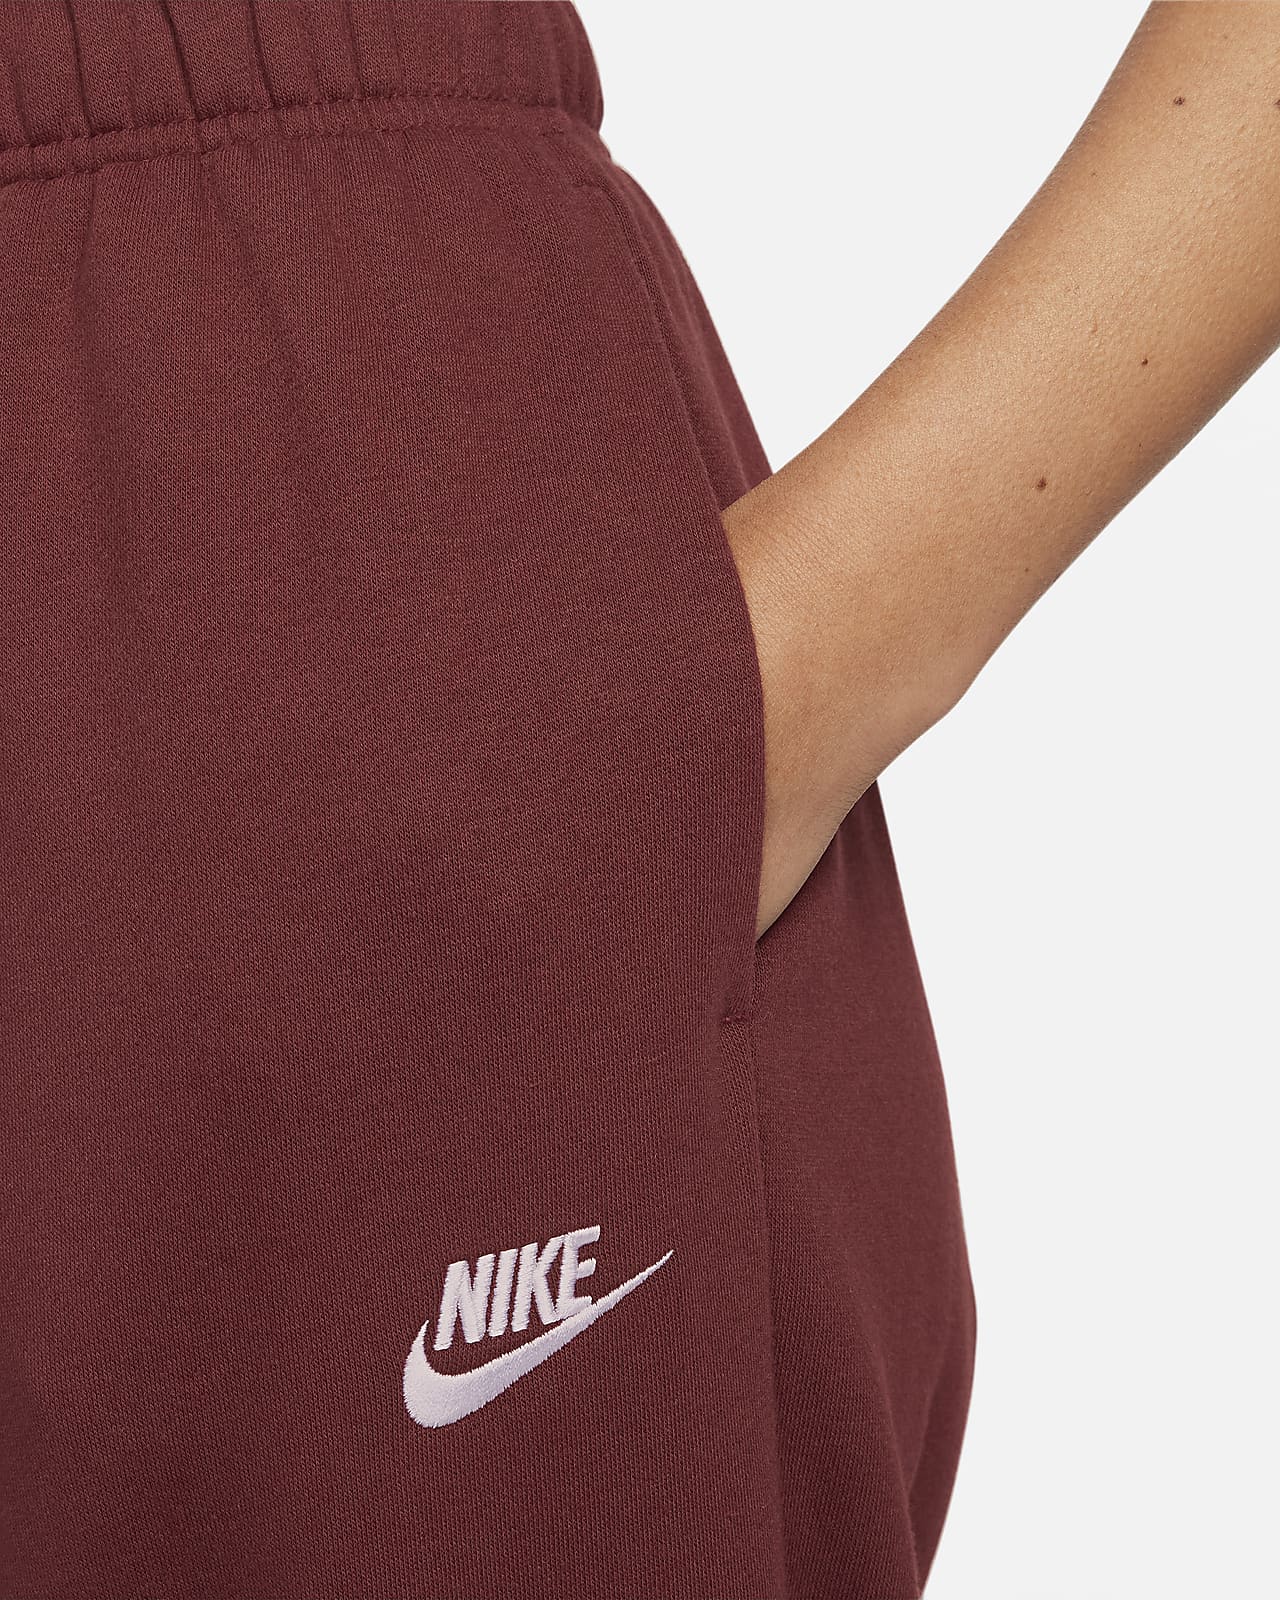 Nike Sportswear Club Fleece Women's Mid-Rise Oversized Sweatpants.